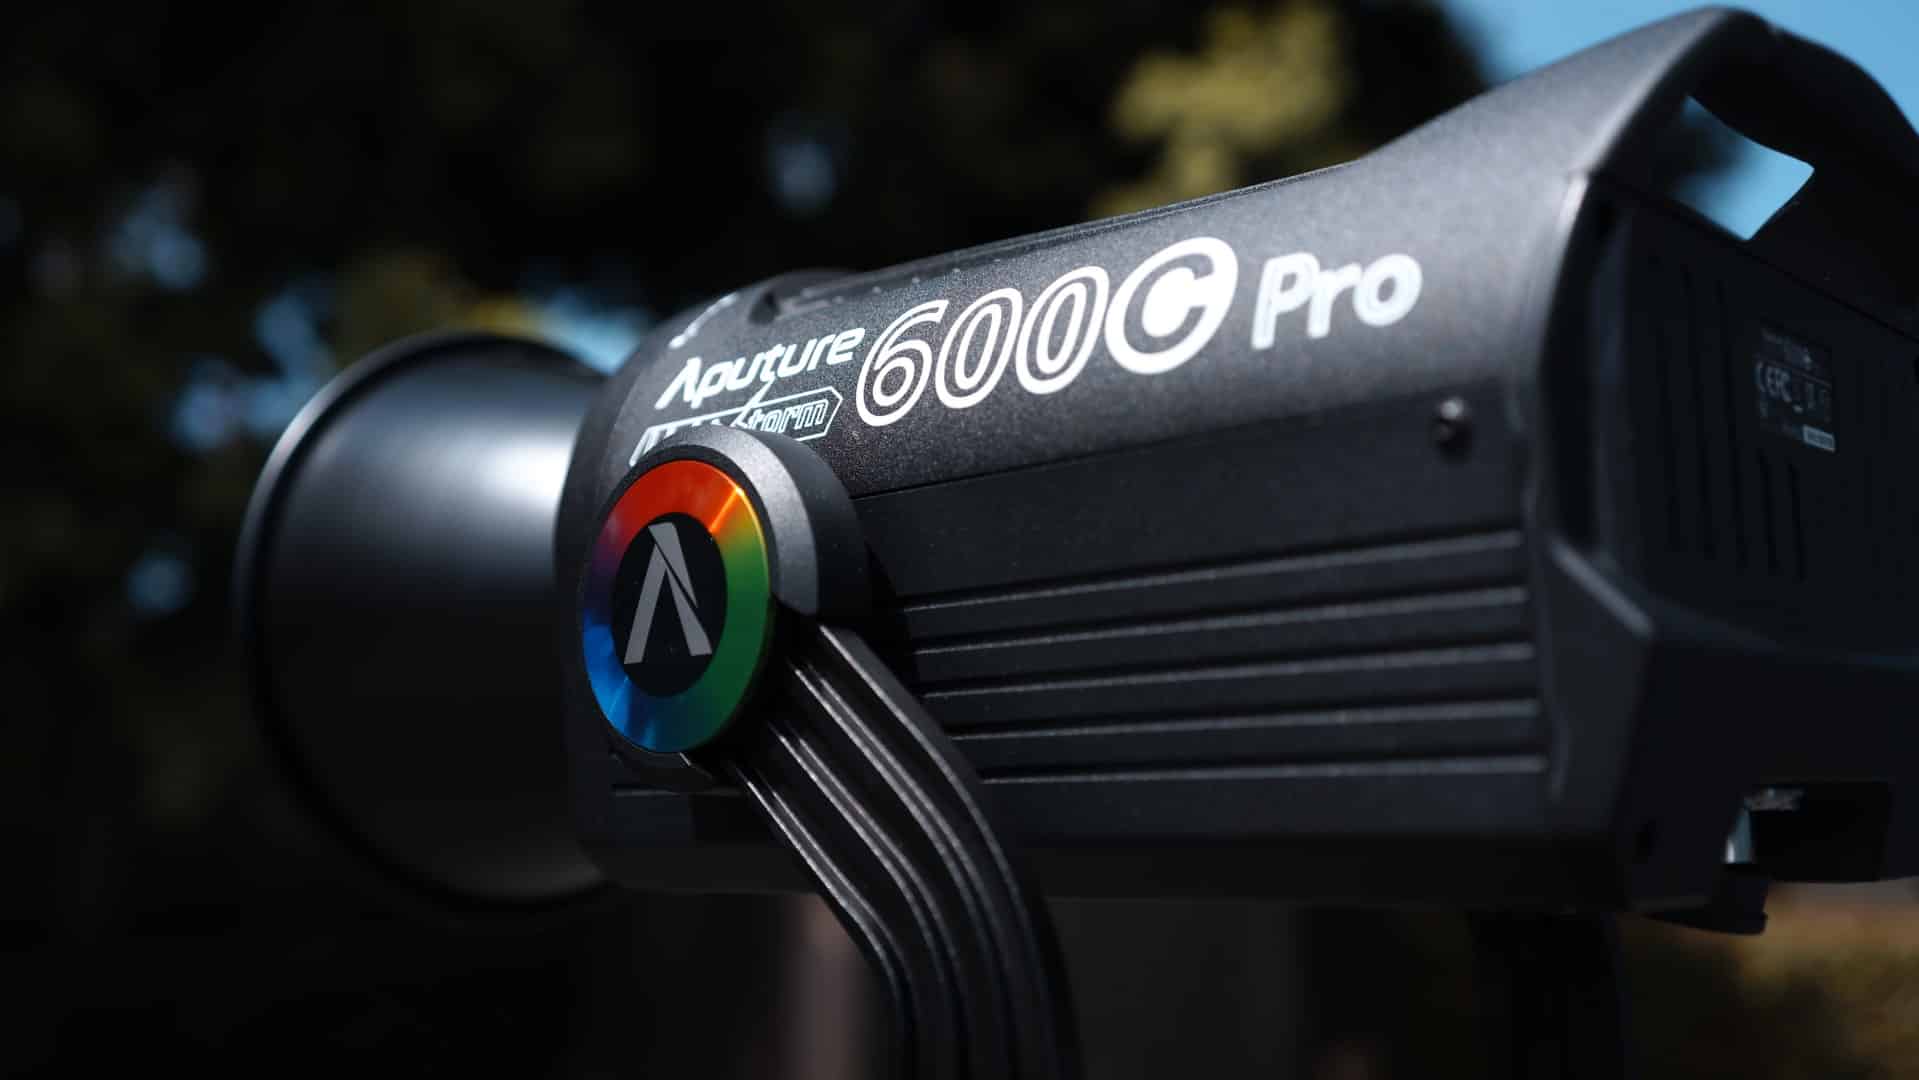 Đánh giá Aputure LS 600C Pro - Cao cấp, chất lượng với linh hoạt màu sắc